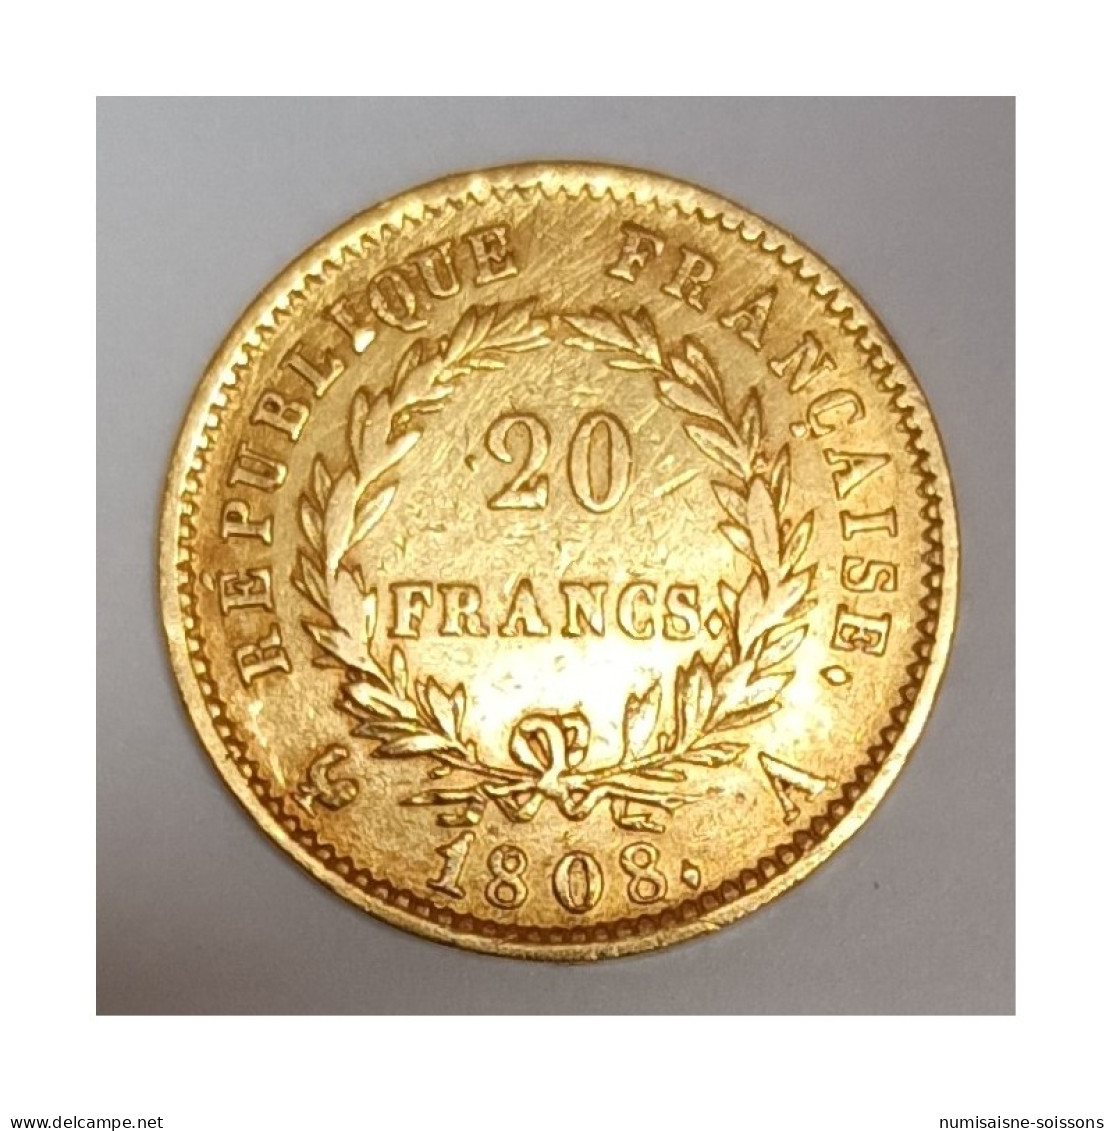 GADOURY 1025 - 20 FRANCS OR 1808 A PARIS - TYPE NAPOLÉON 1ER - KM 687 - TB+ - 20 Francs (or)